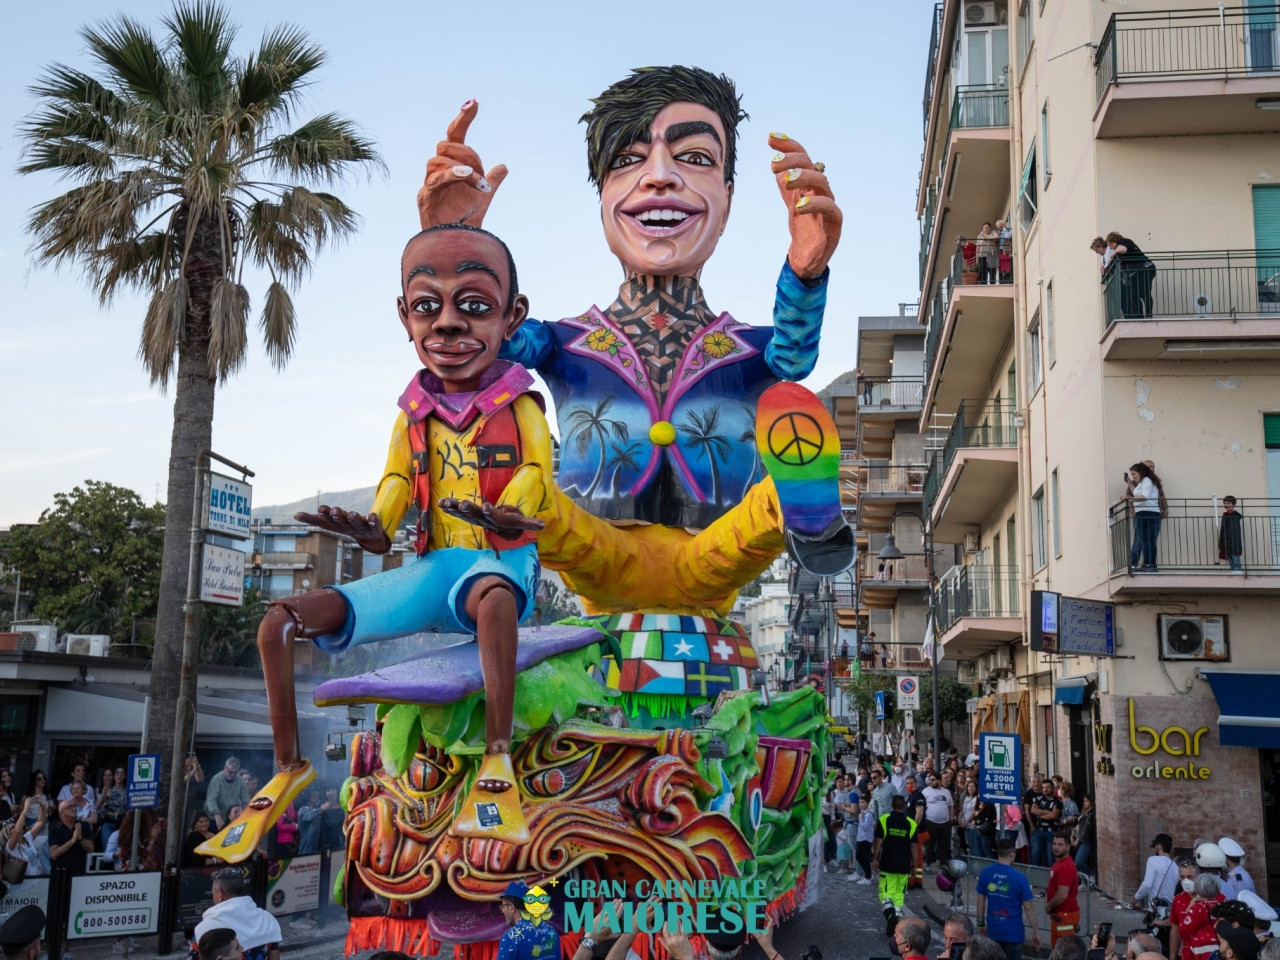 I 50 anni del Gran Carnevale Maiorese